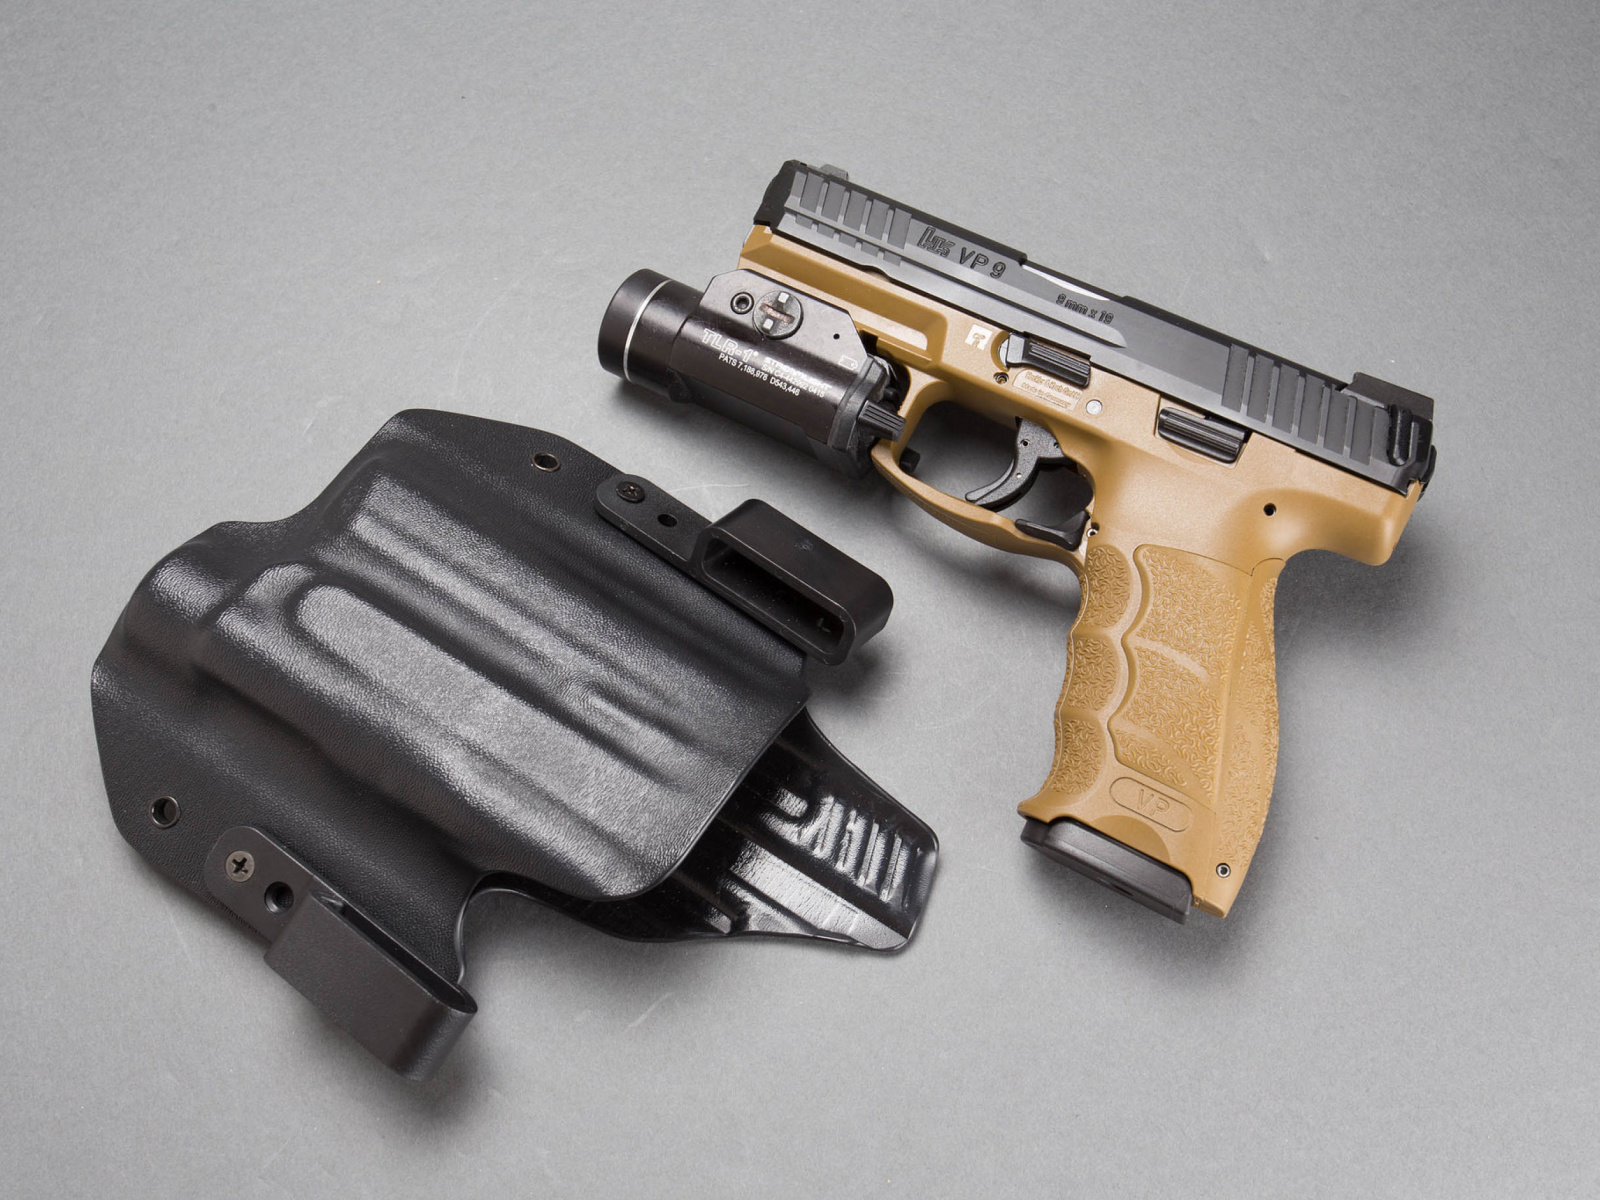 Das Pistols Heckler & Koch 9mm Wallpaper 1600x1200